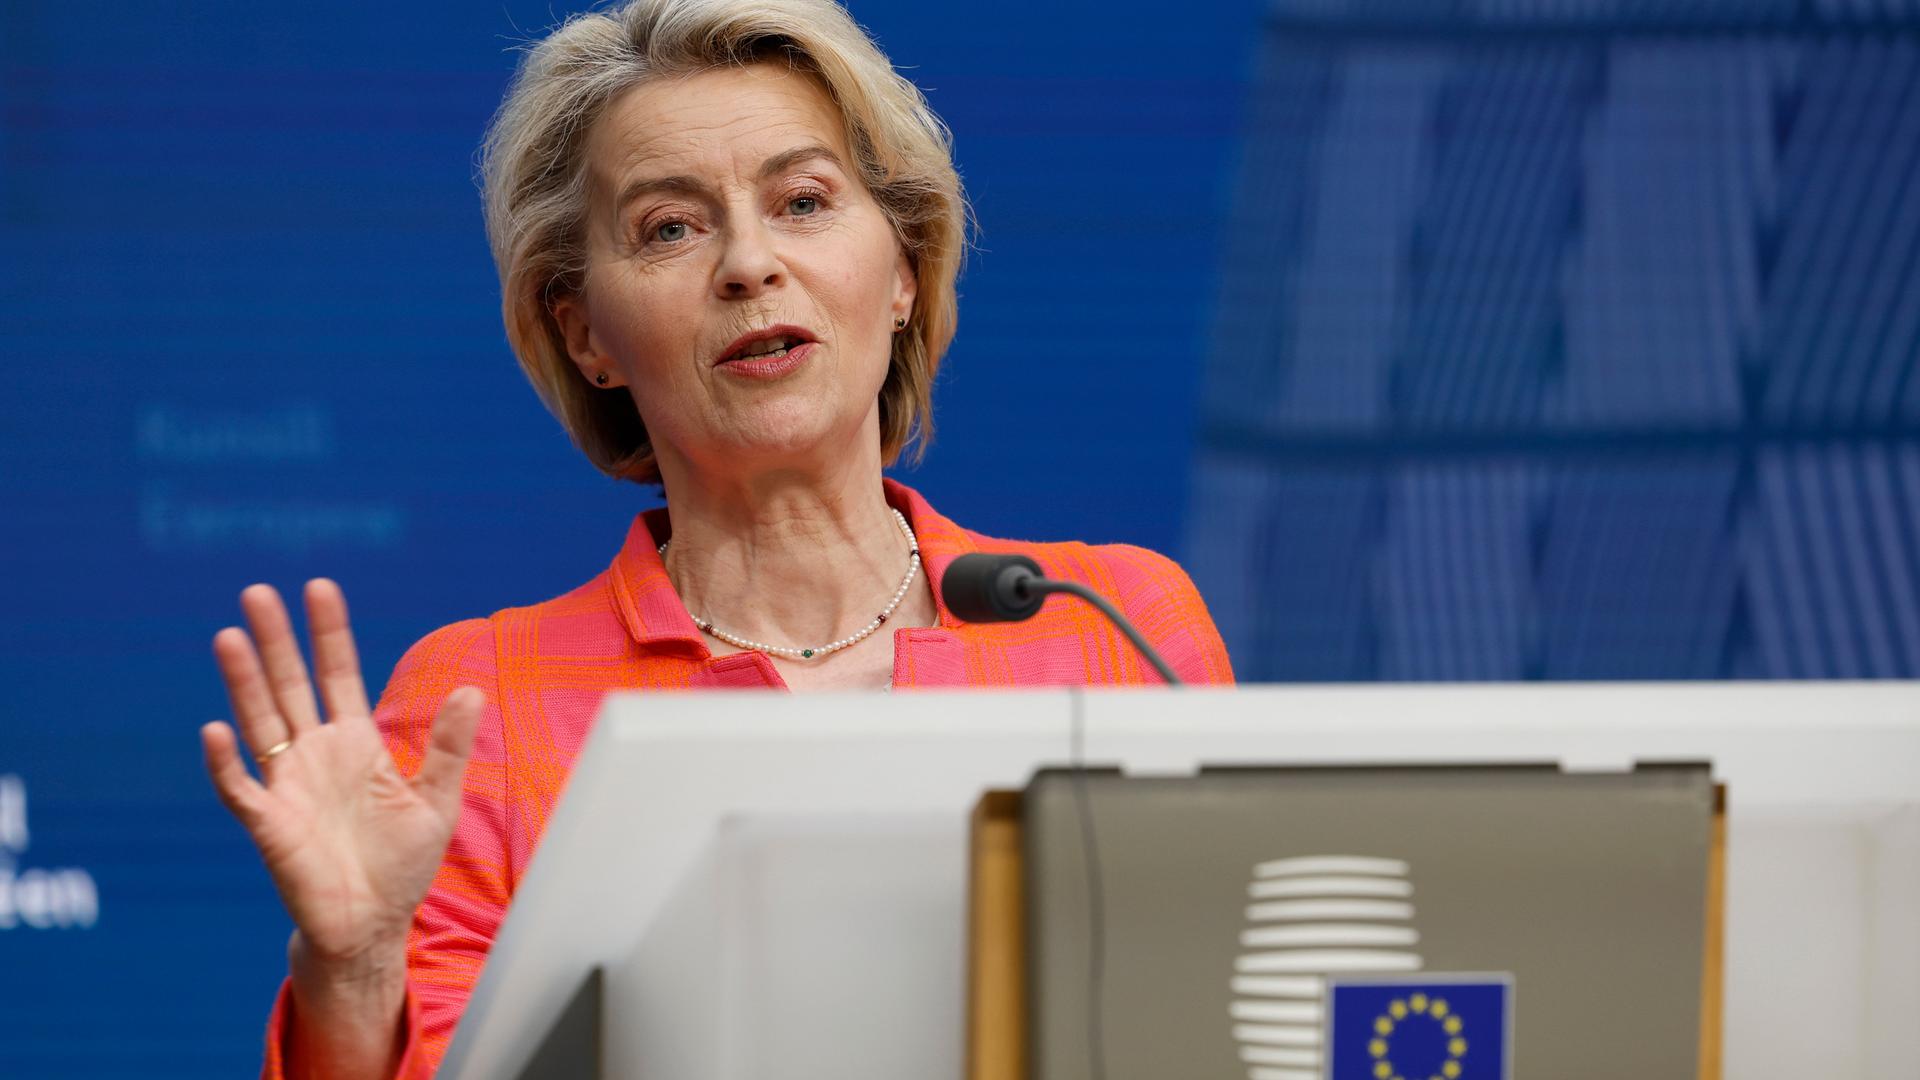 Die Präsidentin der EU-Kommission, Ursula von der Leyen (CDU) steht an einem Rednerpult und hebt ihre rechte Hand, sodass ihre Handinnenfläche sichtbar wird. 